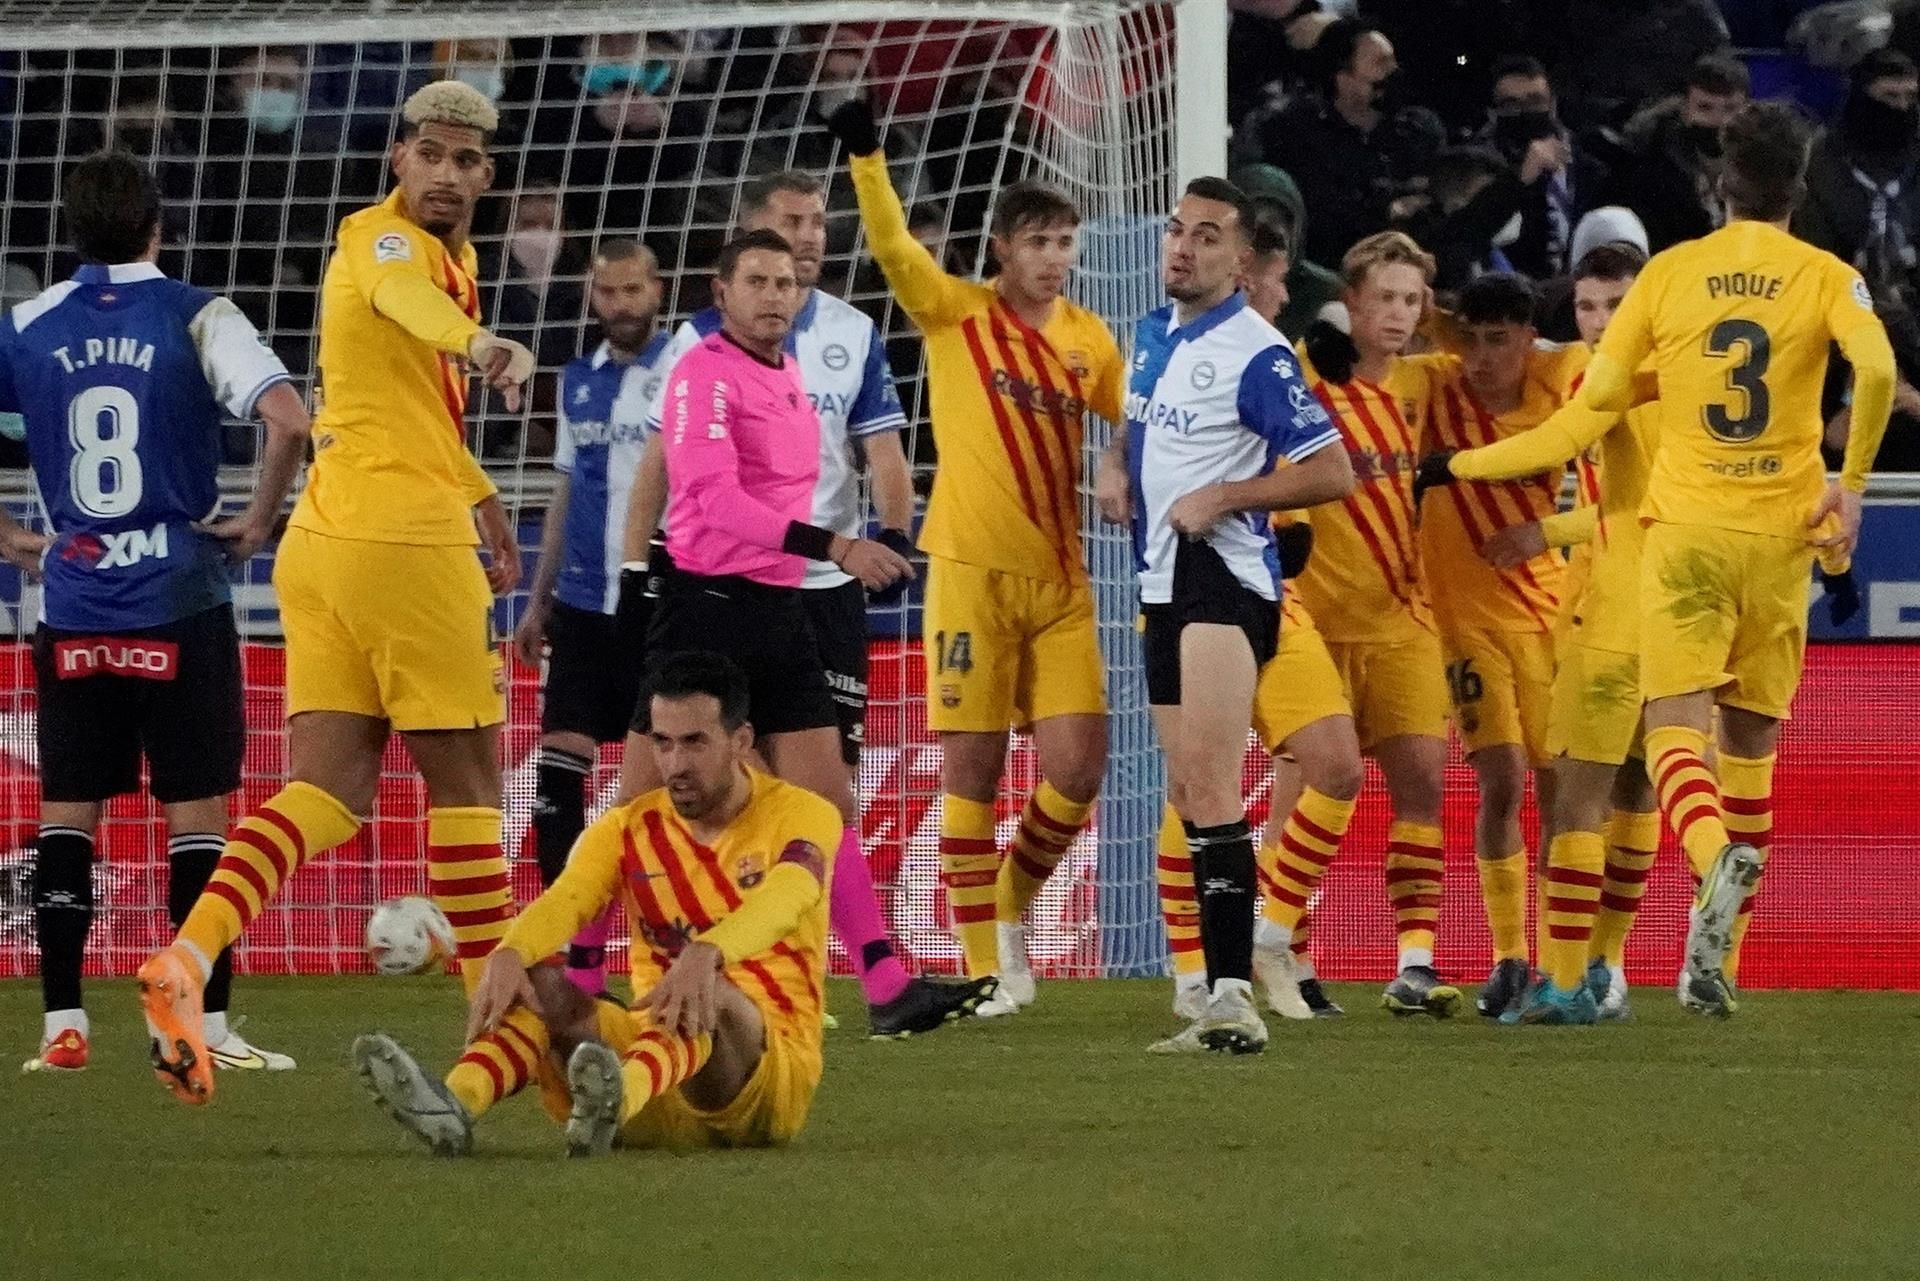 Un lánguido Barça salva los muebles en el minuto 87 ante el Alavés (0-1)